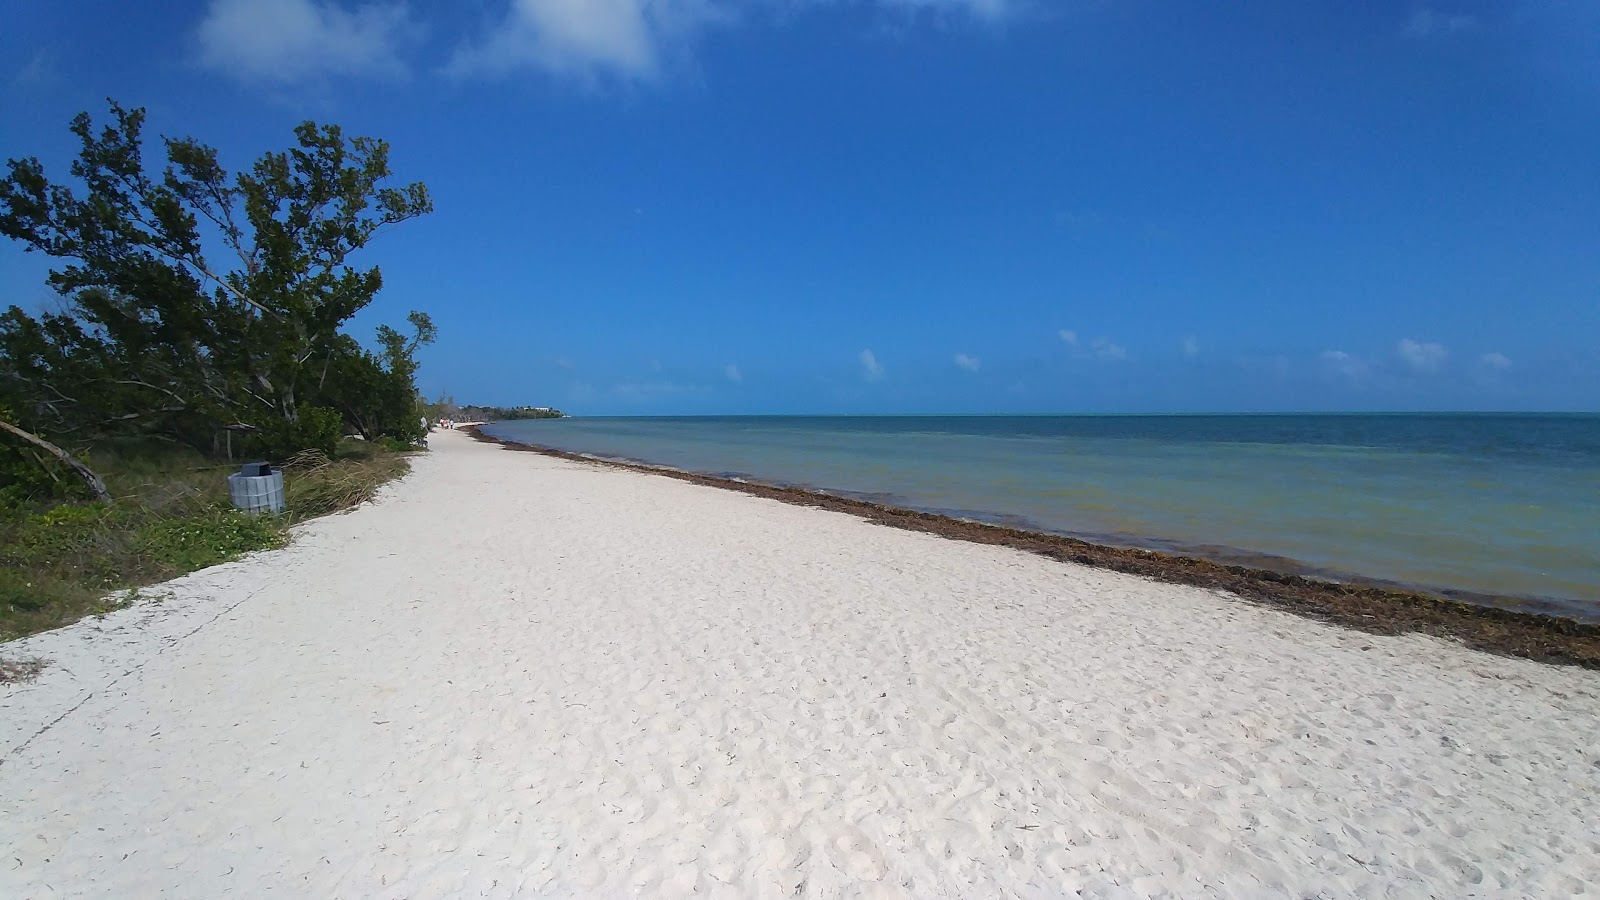 Zdjęcie Cocoa Plum beach z powierzchnią jasny piasek